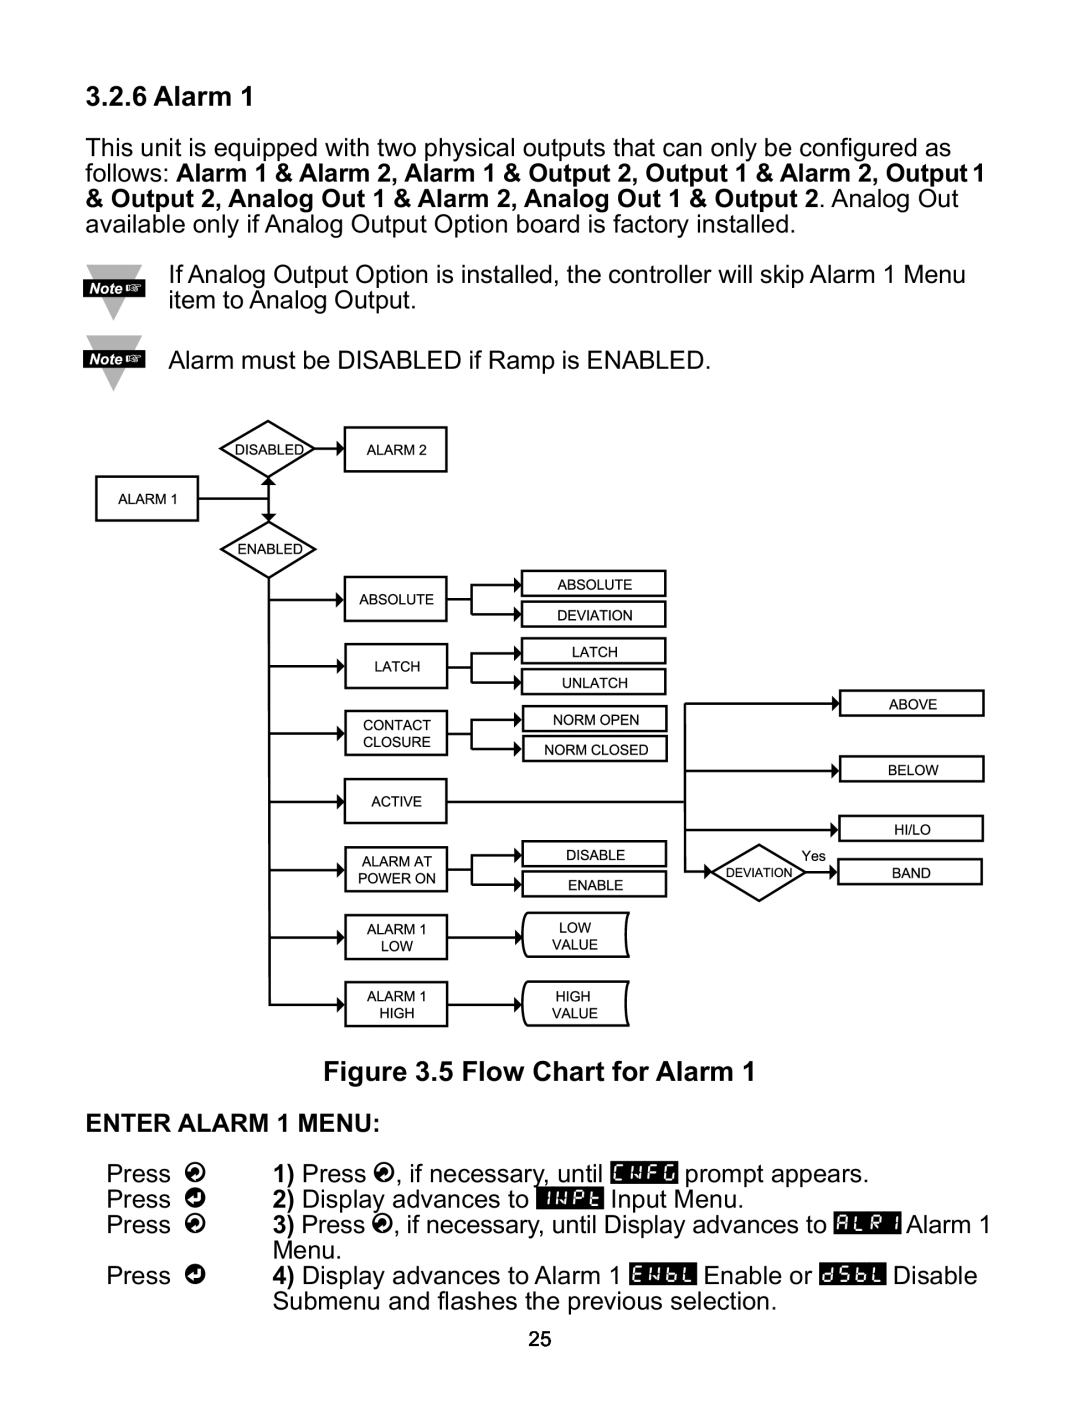 Omega CNI8DV, CNI16D, CNI8C, CNI8DH, CNI32 manual 5 Flow Chart for Alarm, ENTER ALARM 1 MENU 